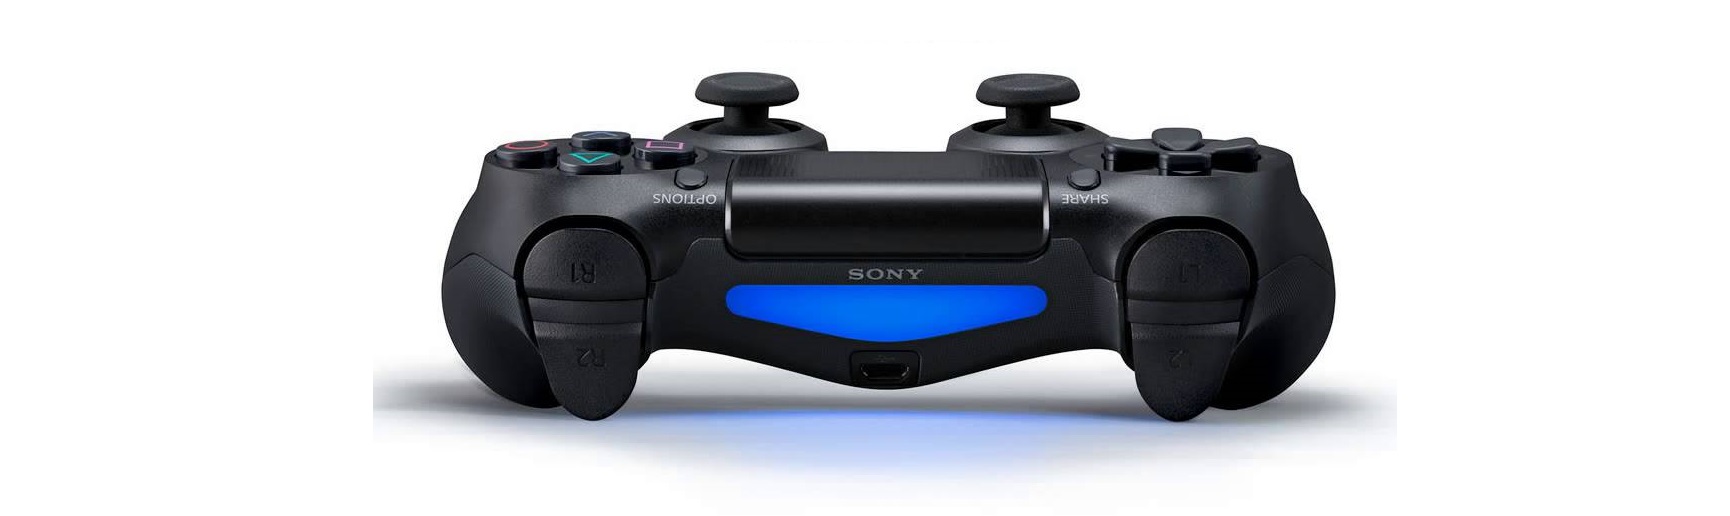 Tay cầm chơi game không dây PS4 Sony DUALSHOCK 4 Controller Đỏ pha lê CUH-ZCT2G 18 tích hợp cảm biến chuyển động cho game thích hợp